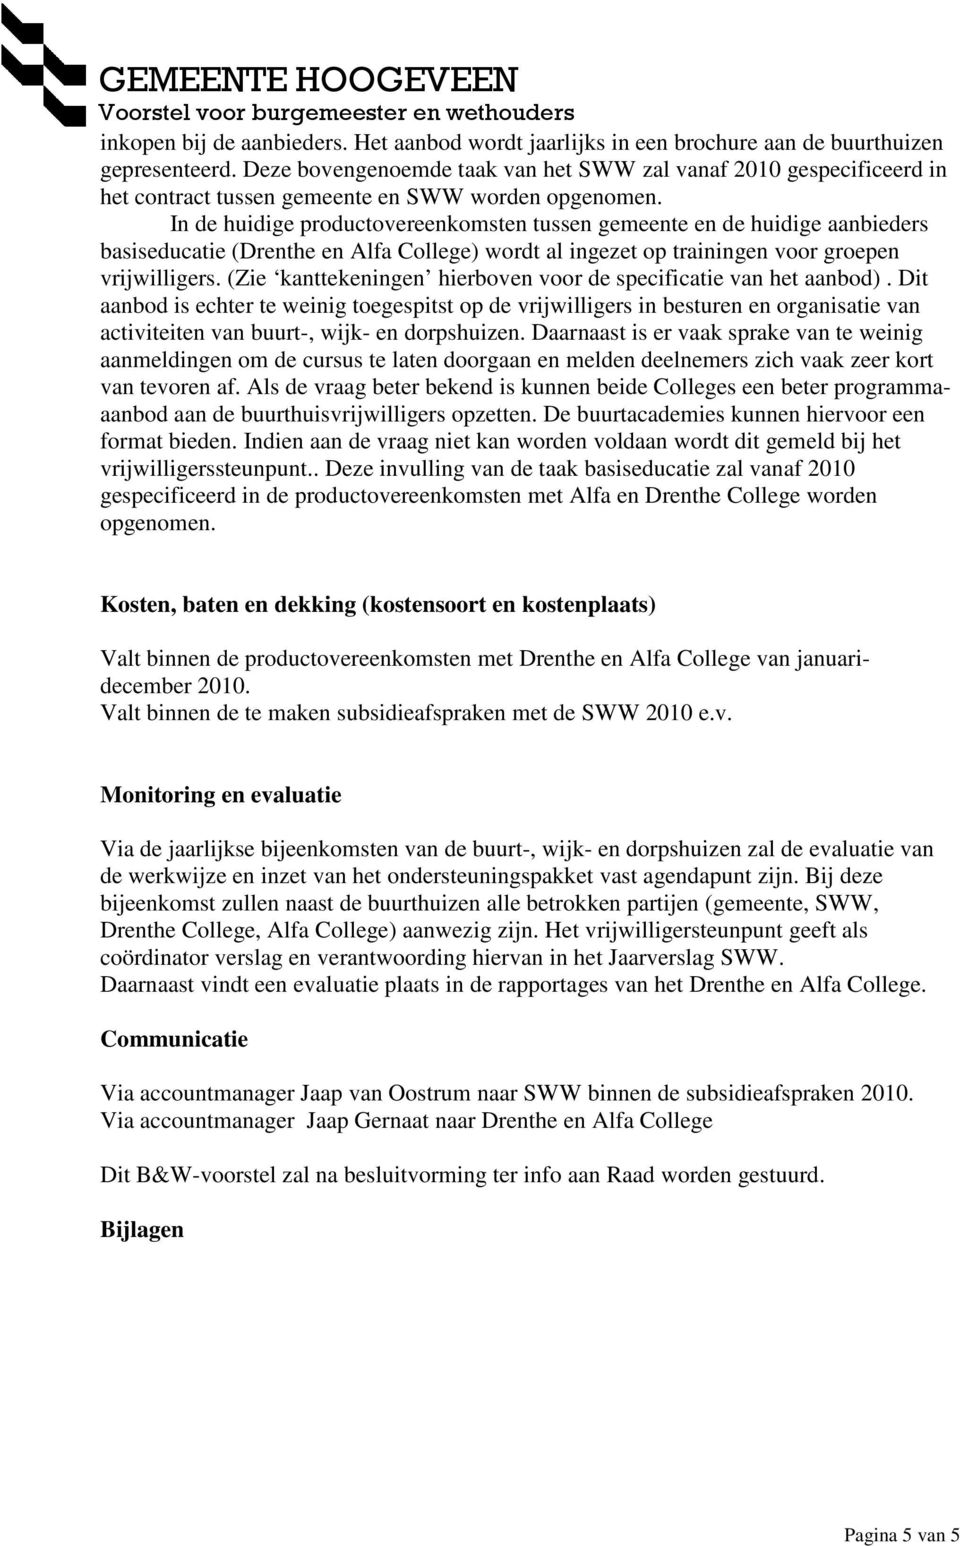 In de huidige productovereenkomsten tussen gemeente en de huidige aanbieders basiseducatie (Drenthe en Alfa College) wordt al ingezet op trainingen voor groepen vrijwilligers.